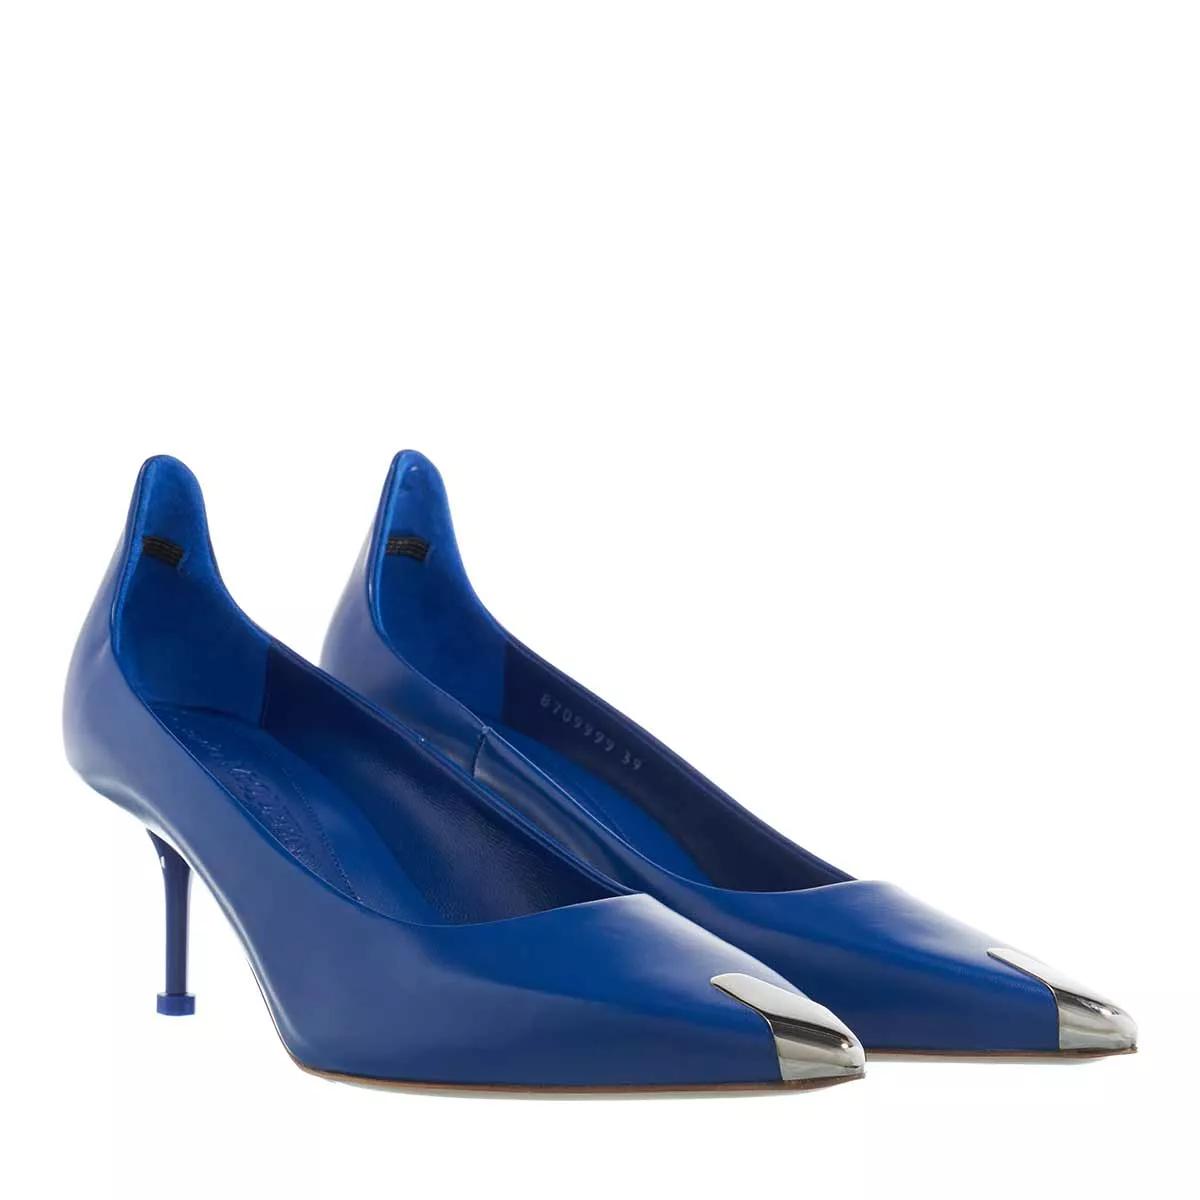 Alexander McQueen Pumps & High Heels - Pumps - Gr. 38,5 (EU) - in Blau - für Damen von alexander mcqueen